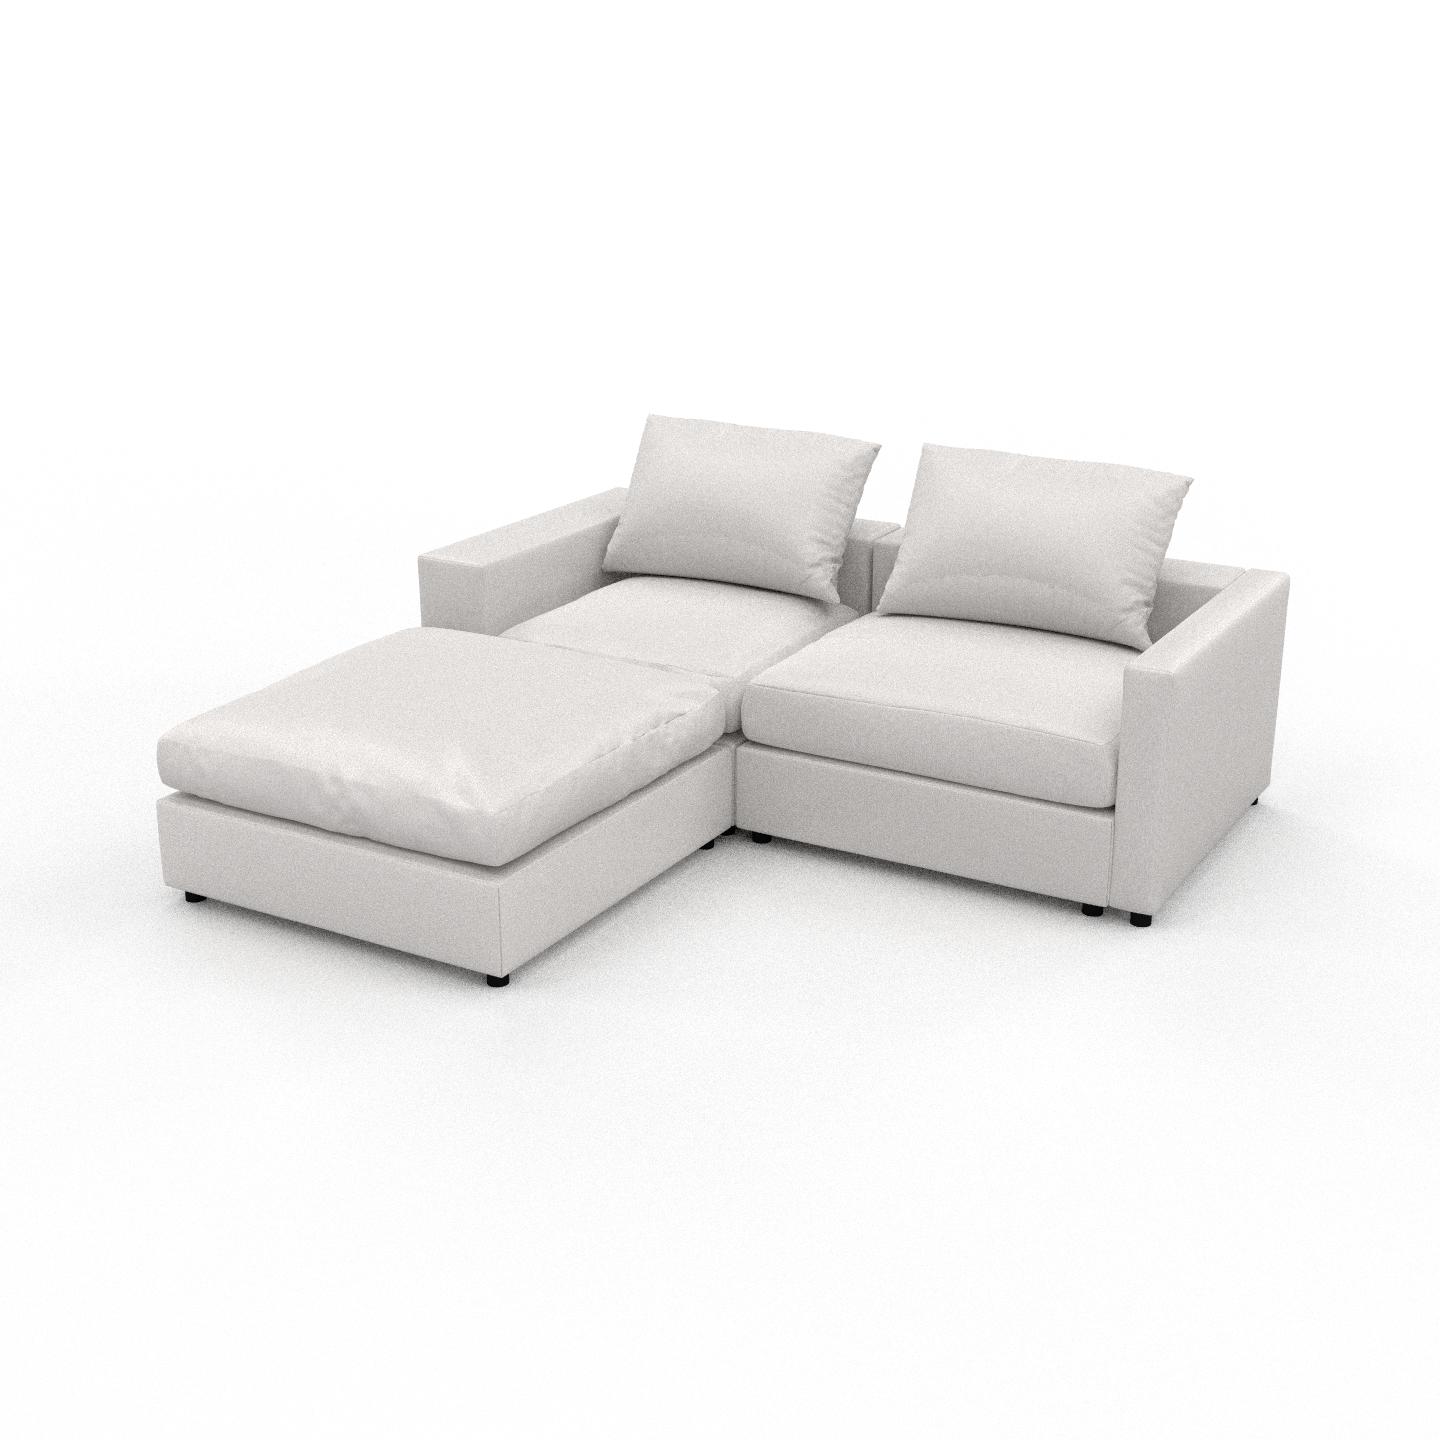 MYCS Ecksofa Weiß - Flexible Designer-Polsterecke, L-Form: Beste Qualität, einzigartiges Design - 216 x 62 x 204 cm, konfigurierbar